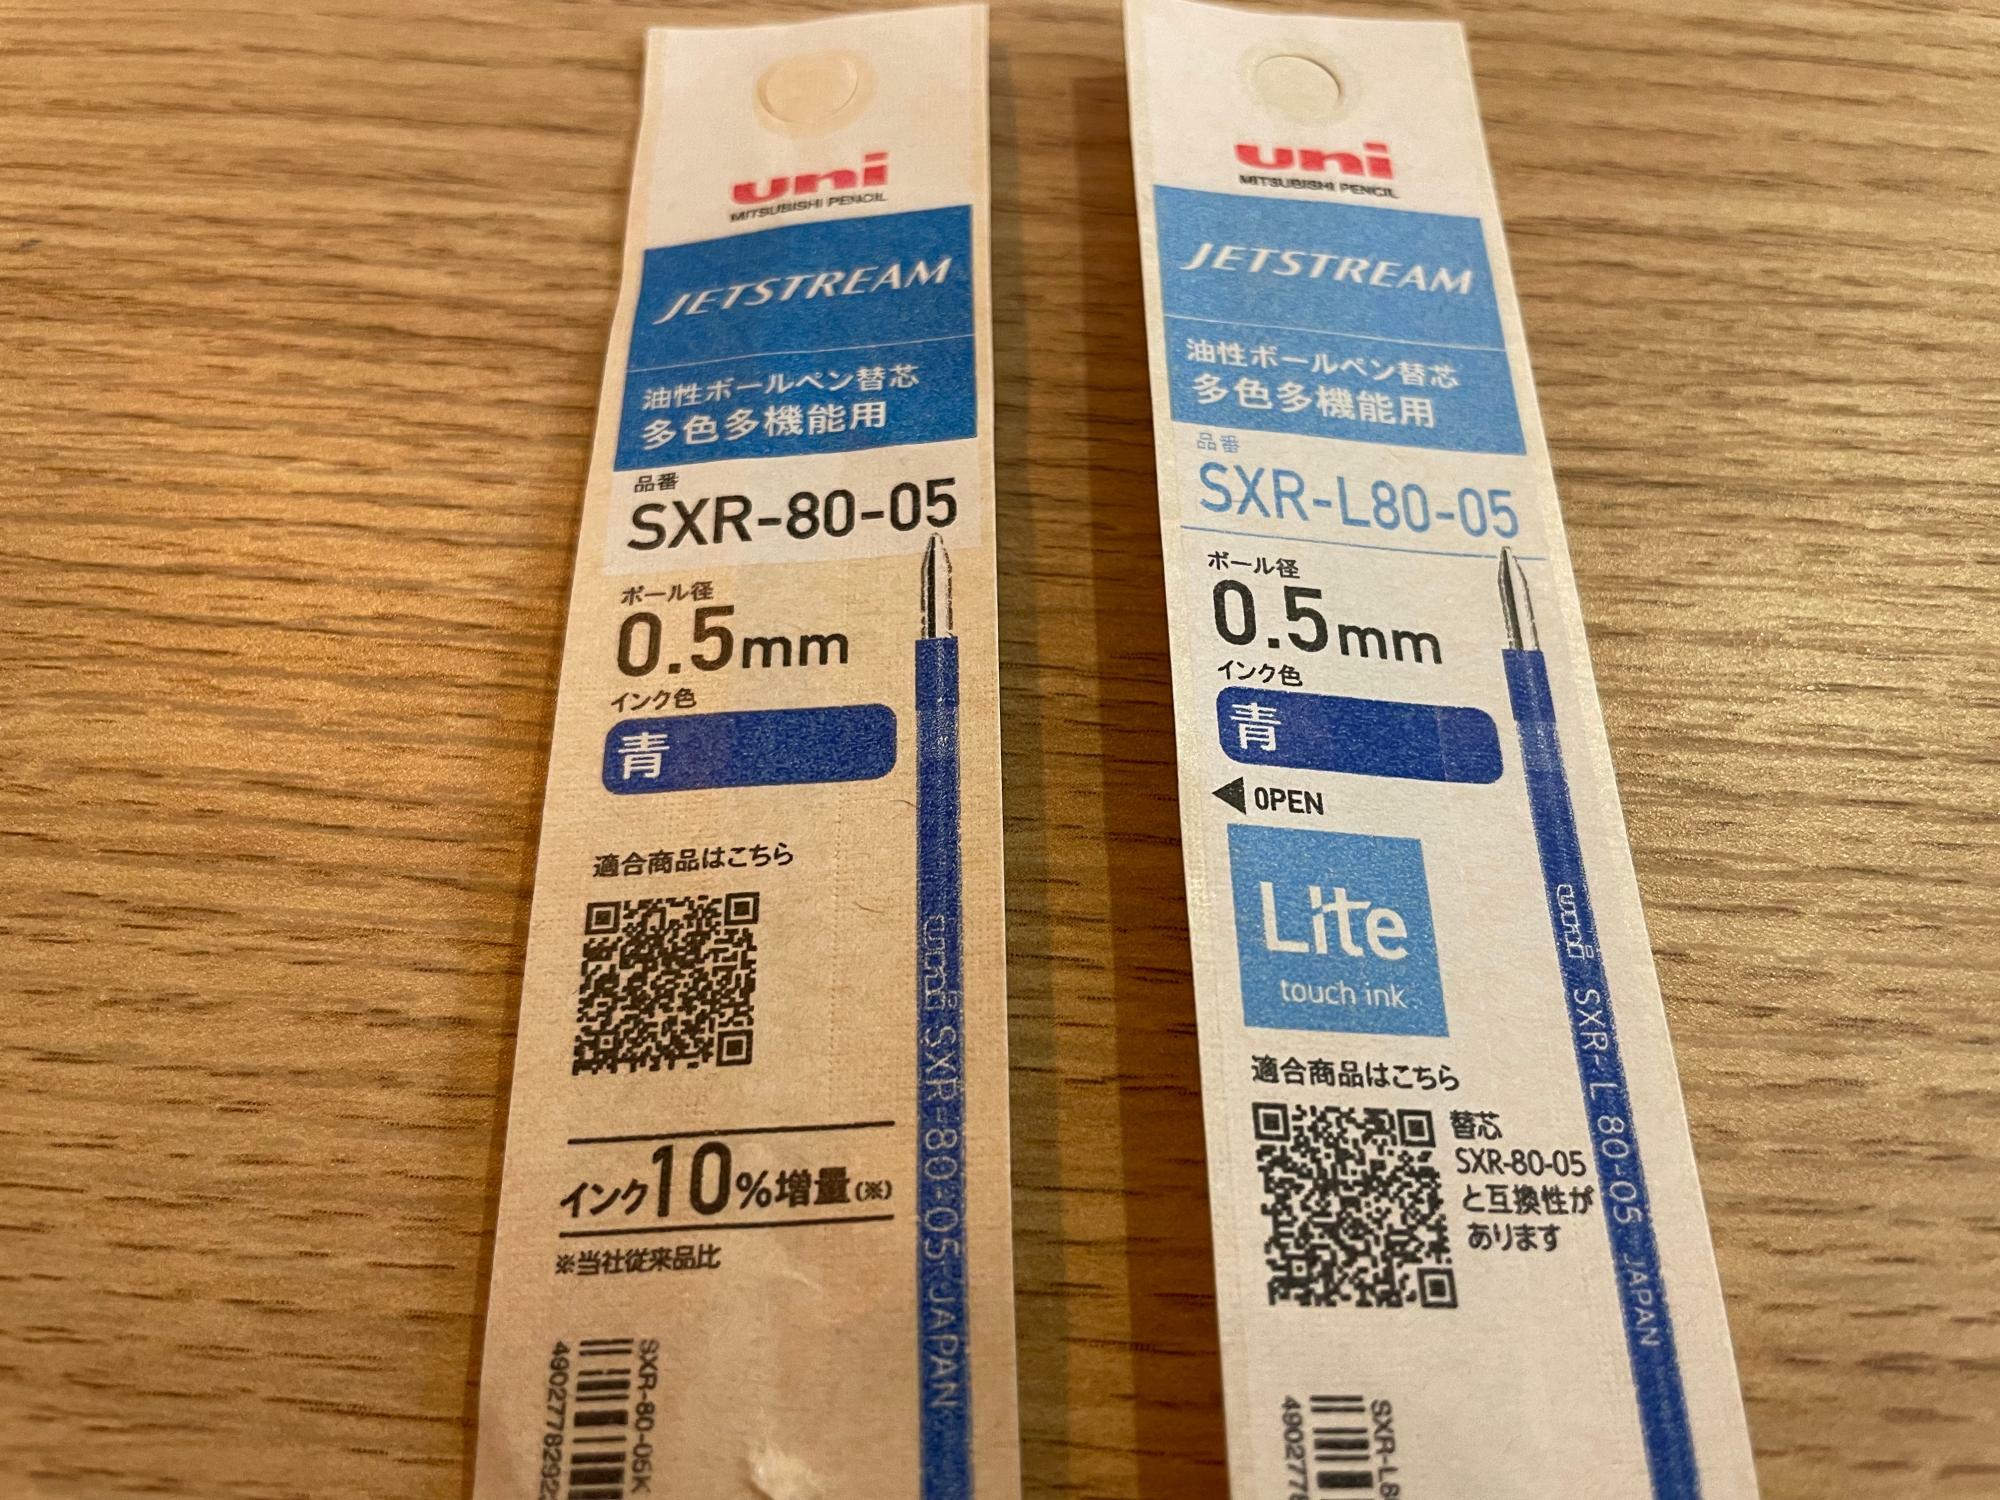 旧製品（左）とのパッケージの比較。「Lite」の文言で新しいものであることがわかる